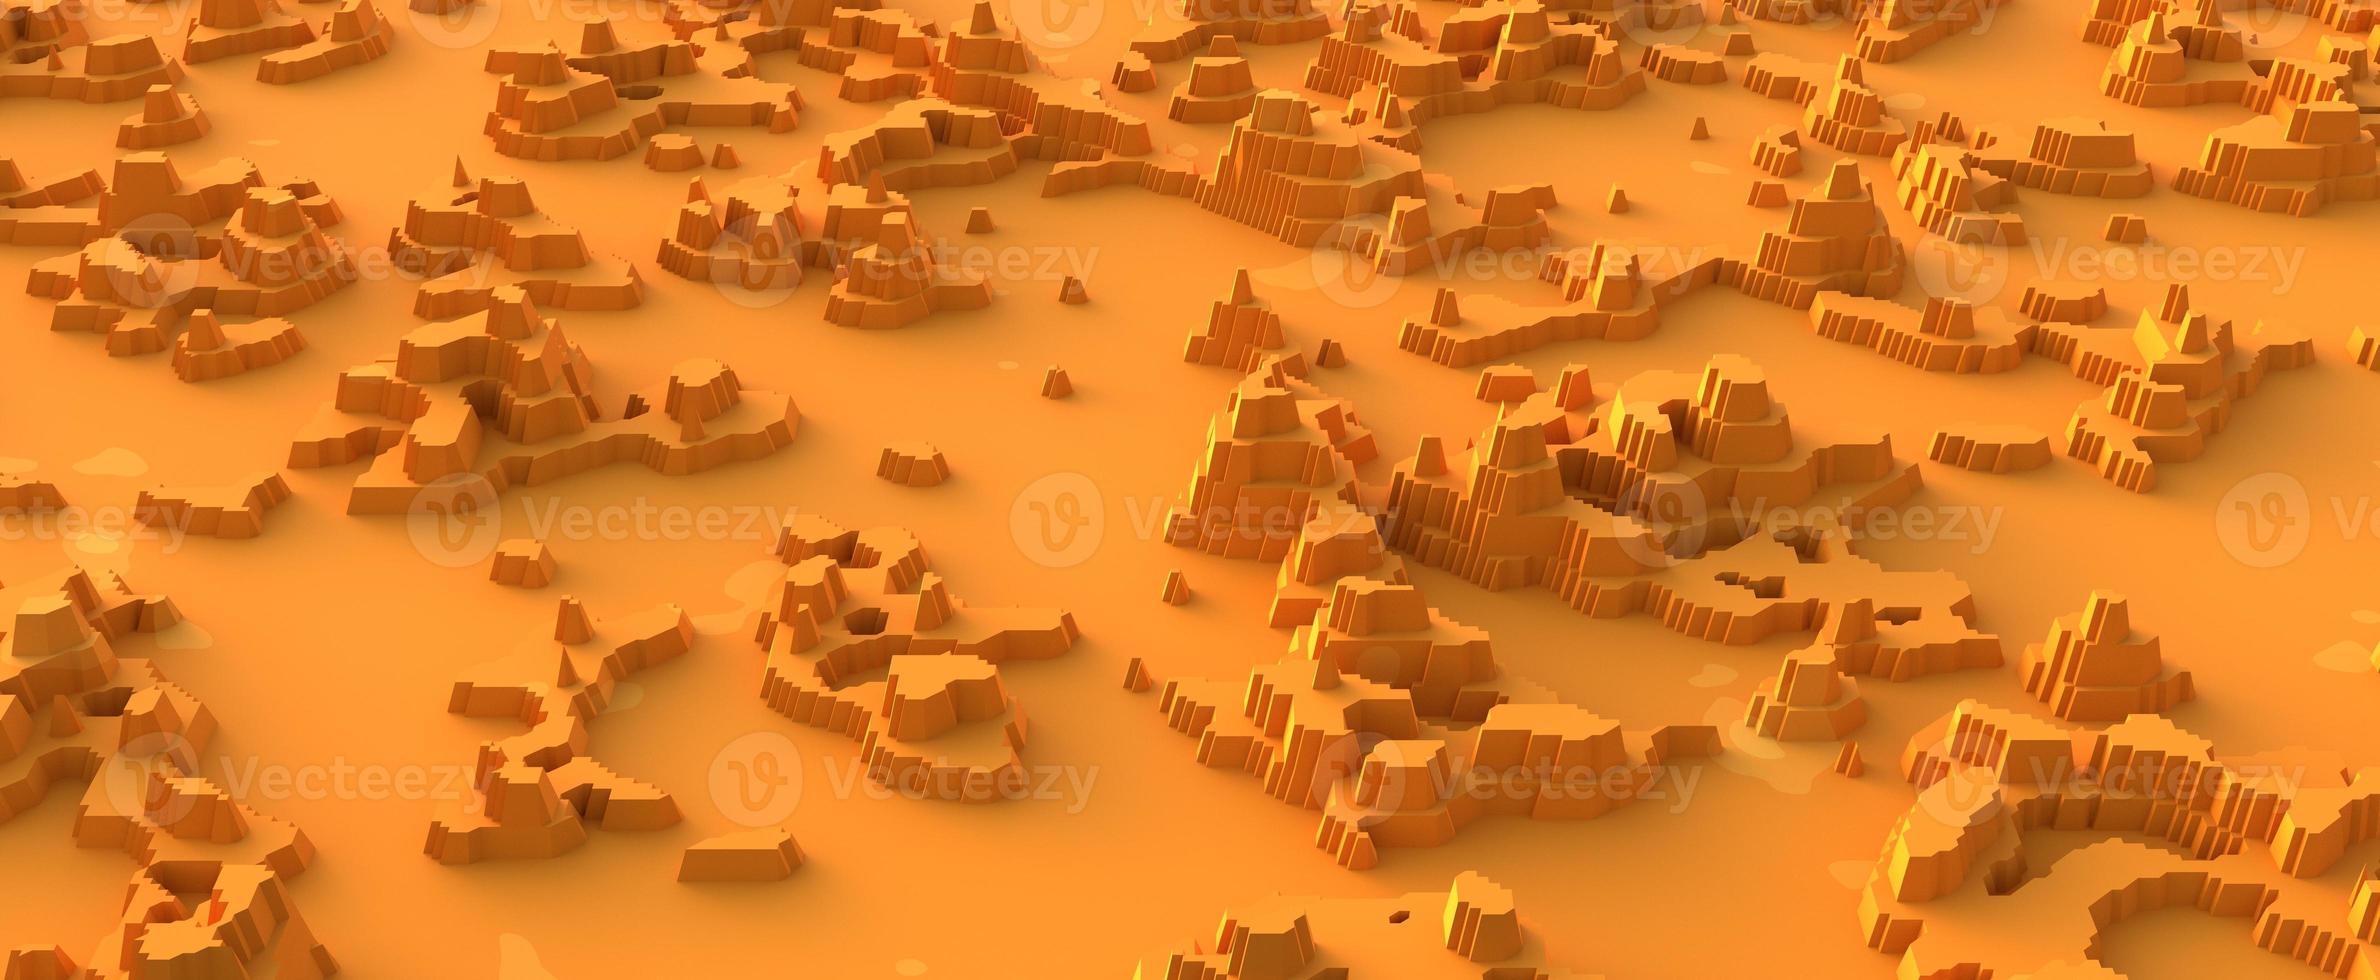 paesaggio di montagna del deserto ritagliato dalla carta. superficie sabbiosa gialla calda con rendering 3d massicci di pietra e oasi secche. astrazione naturale di canyon e colline sparse nel deserto foto